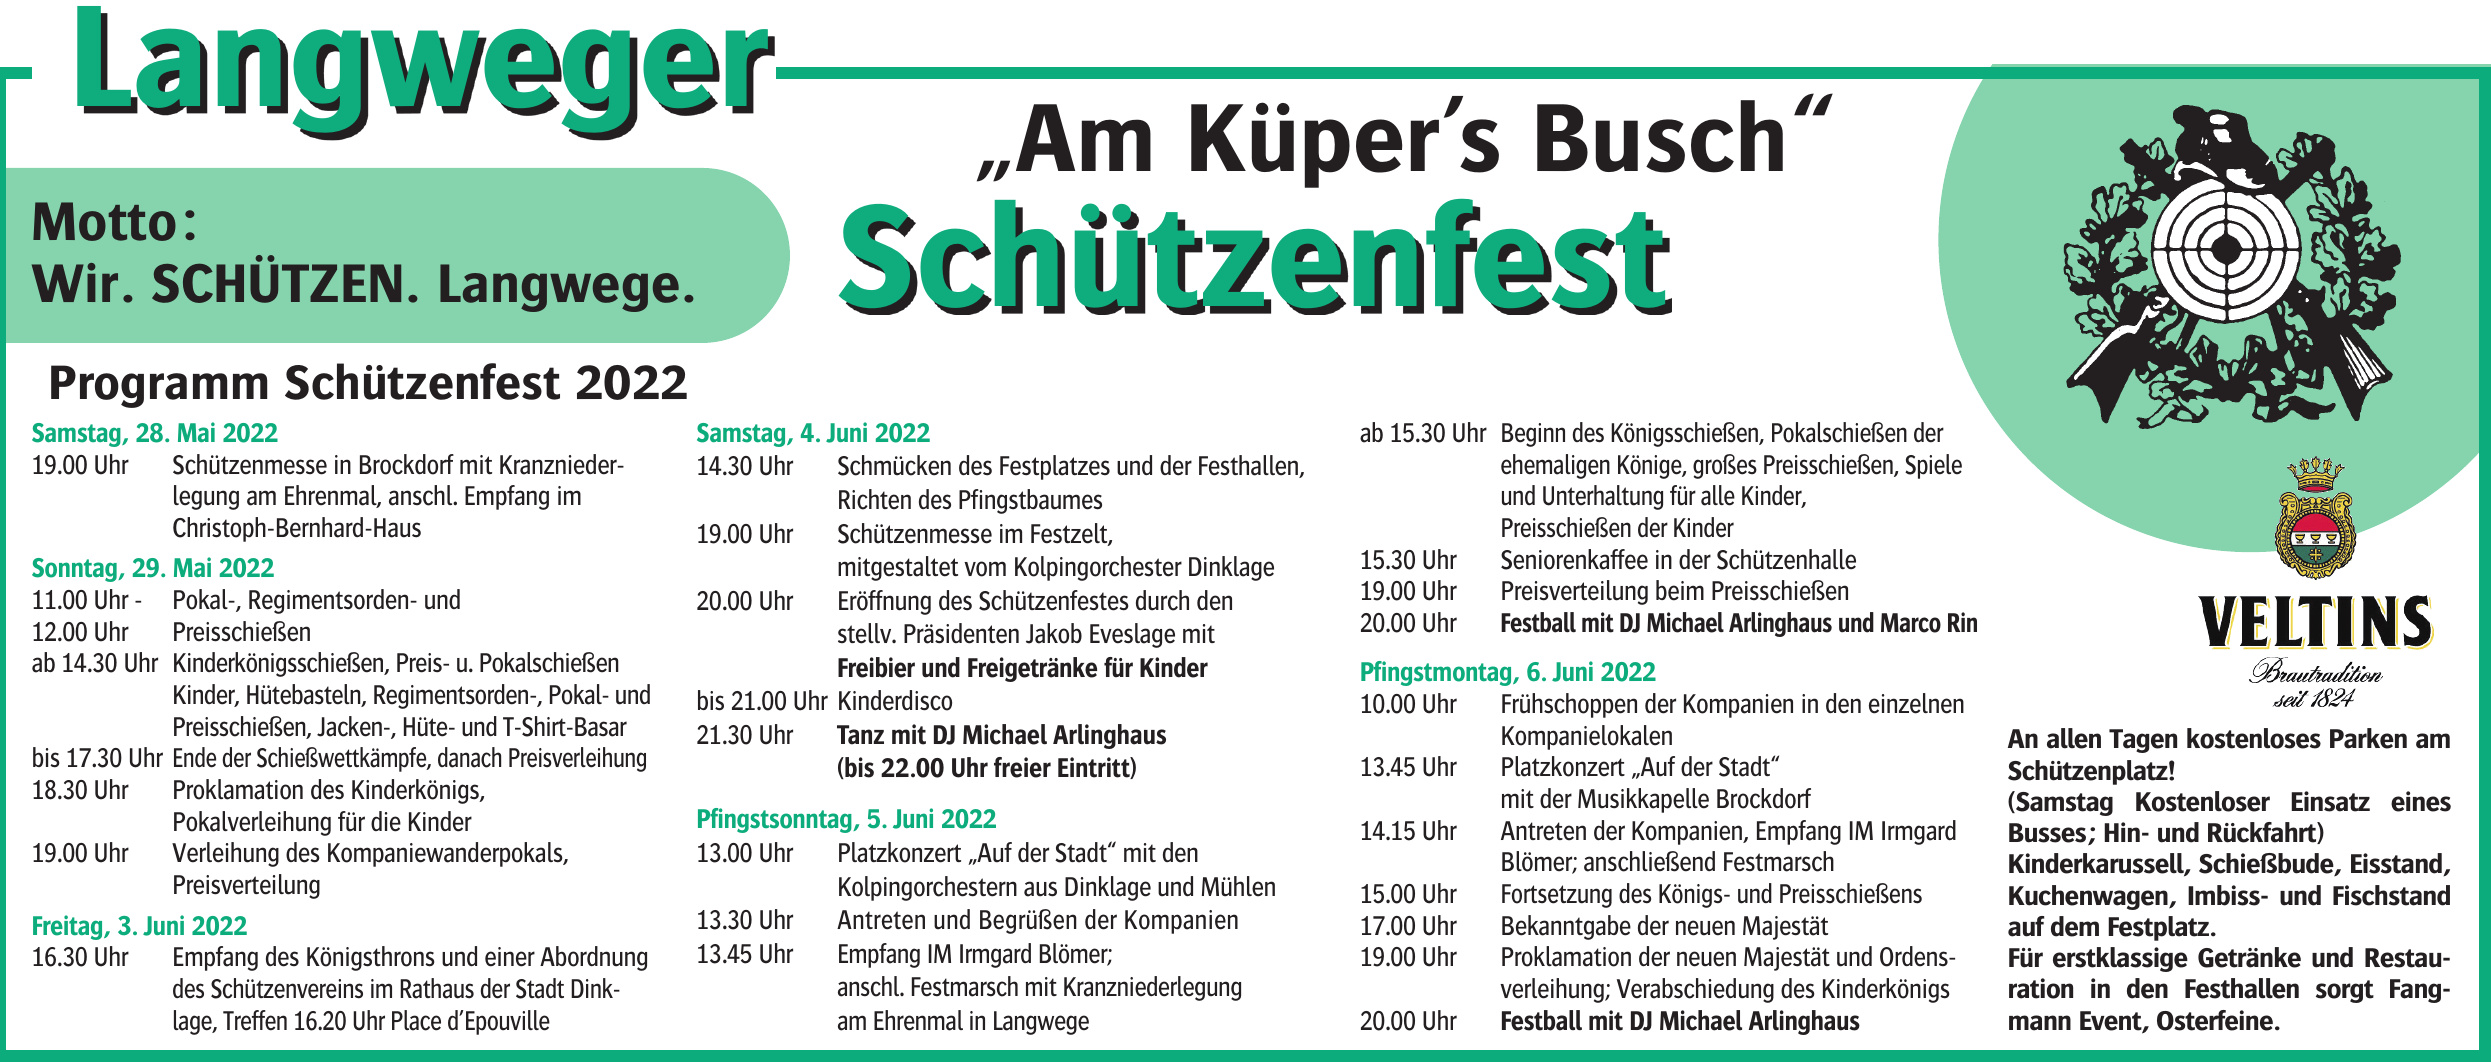 St. Hubertus feiert „Schützenfest am Küpers Busch“ Image 2